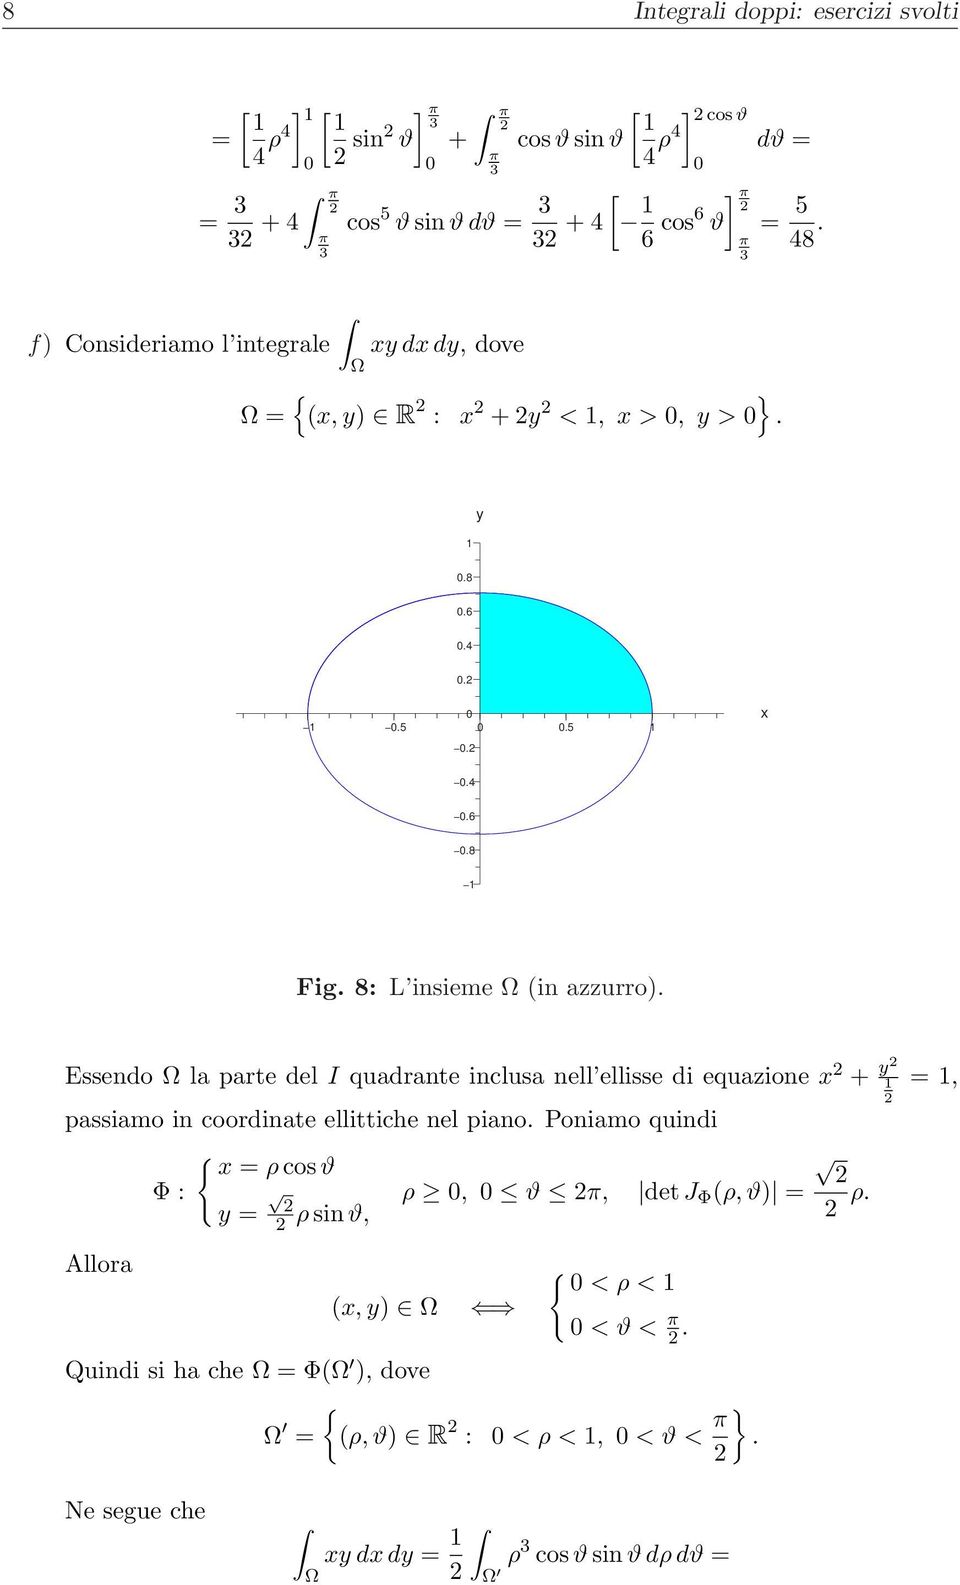 Essendo la parte del I quadrante inclusa nell ellisse di equazione + passiamo in coordinate ellittiche nel piano.